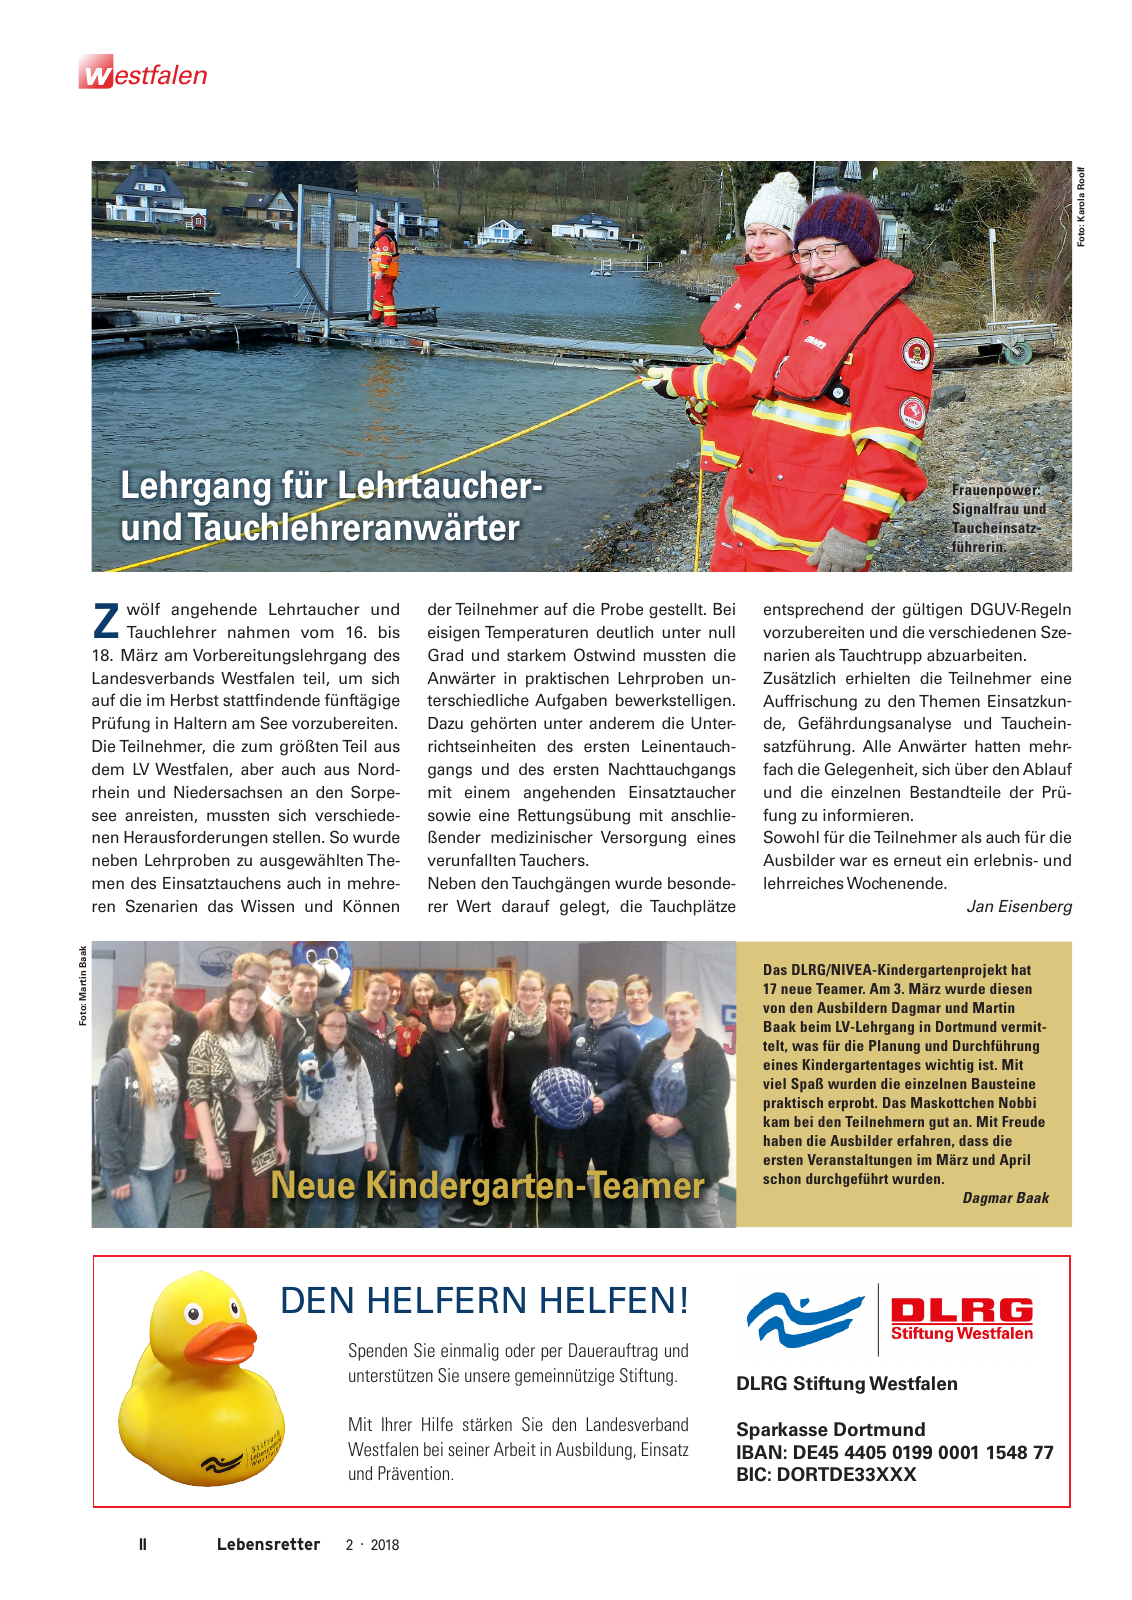 Vorschau Lebensretter 2/2018 - Regionalausgabe Westfalen Seite 4